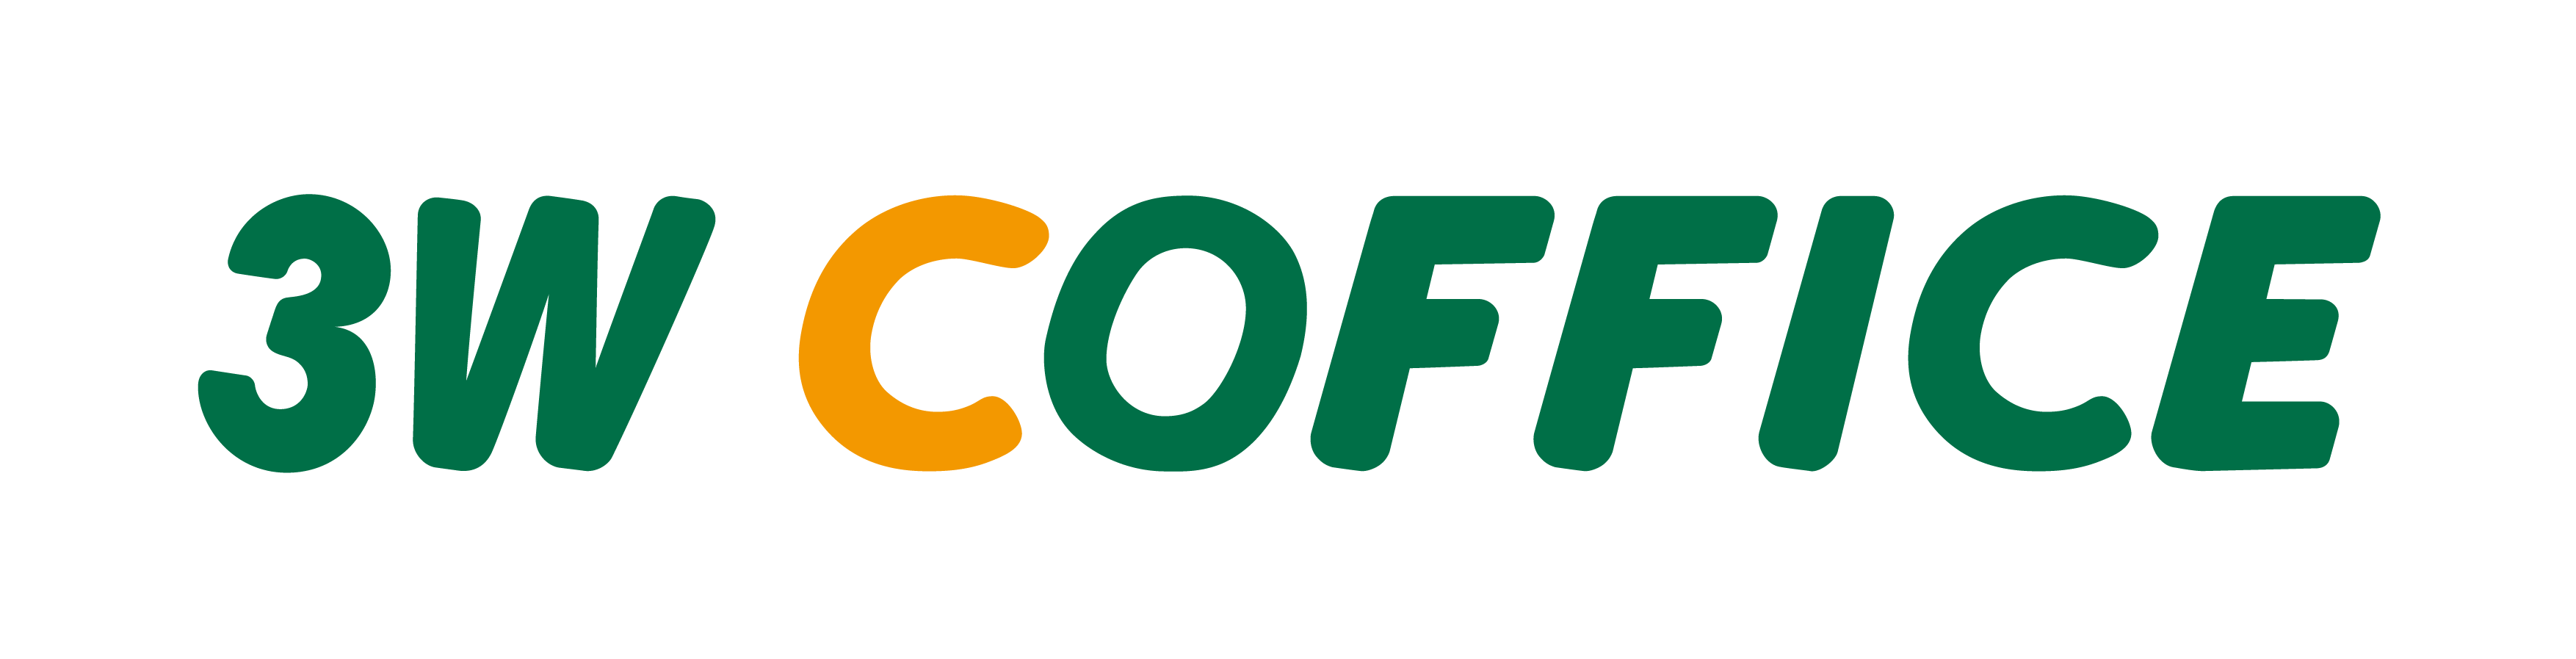 3W COFFICE logo-01.png